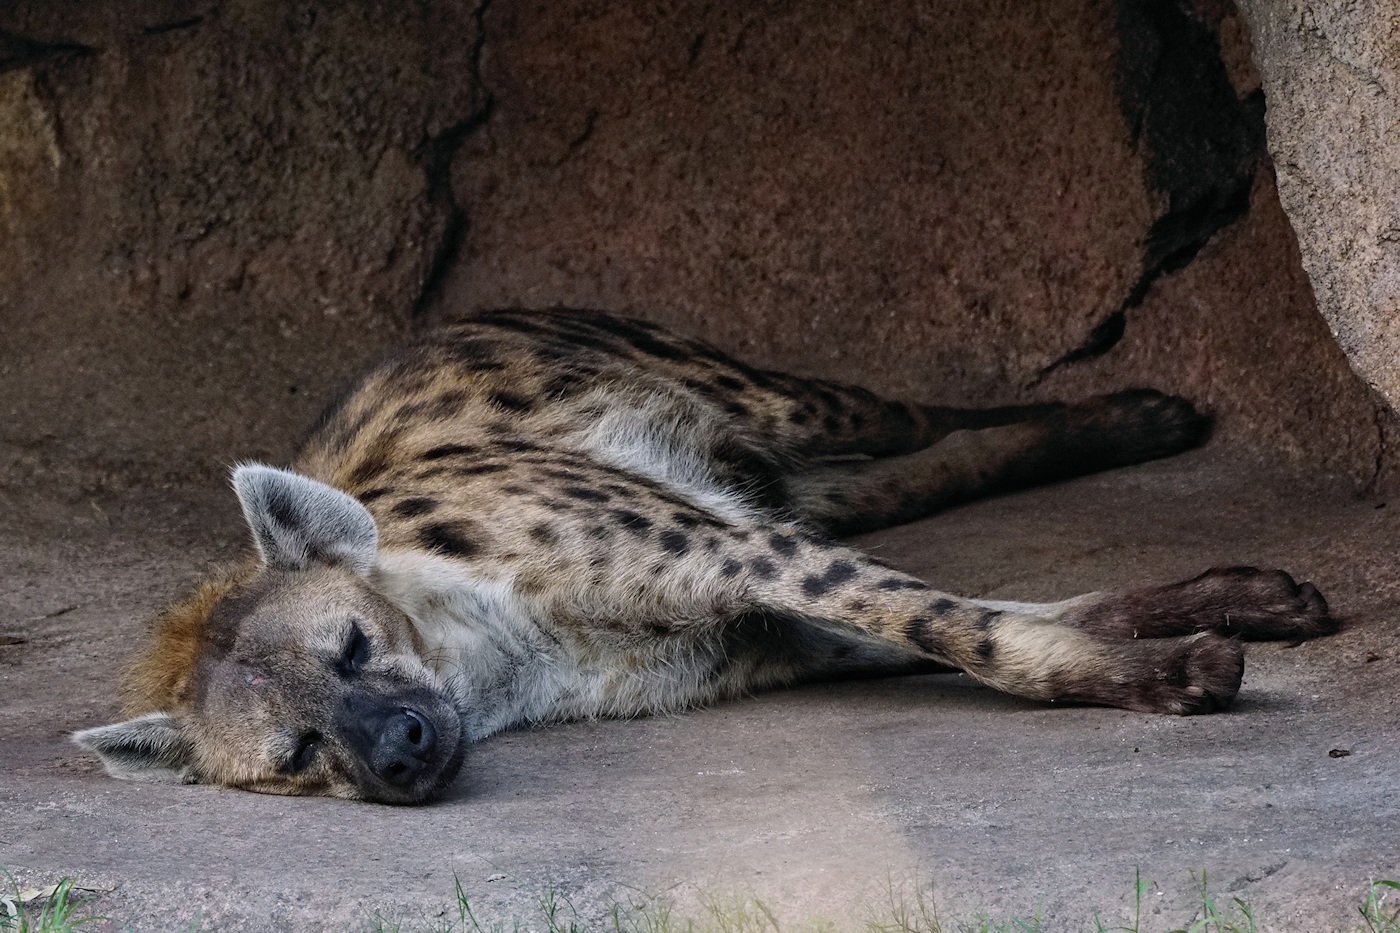 Sleeping hyena